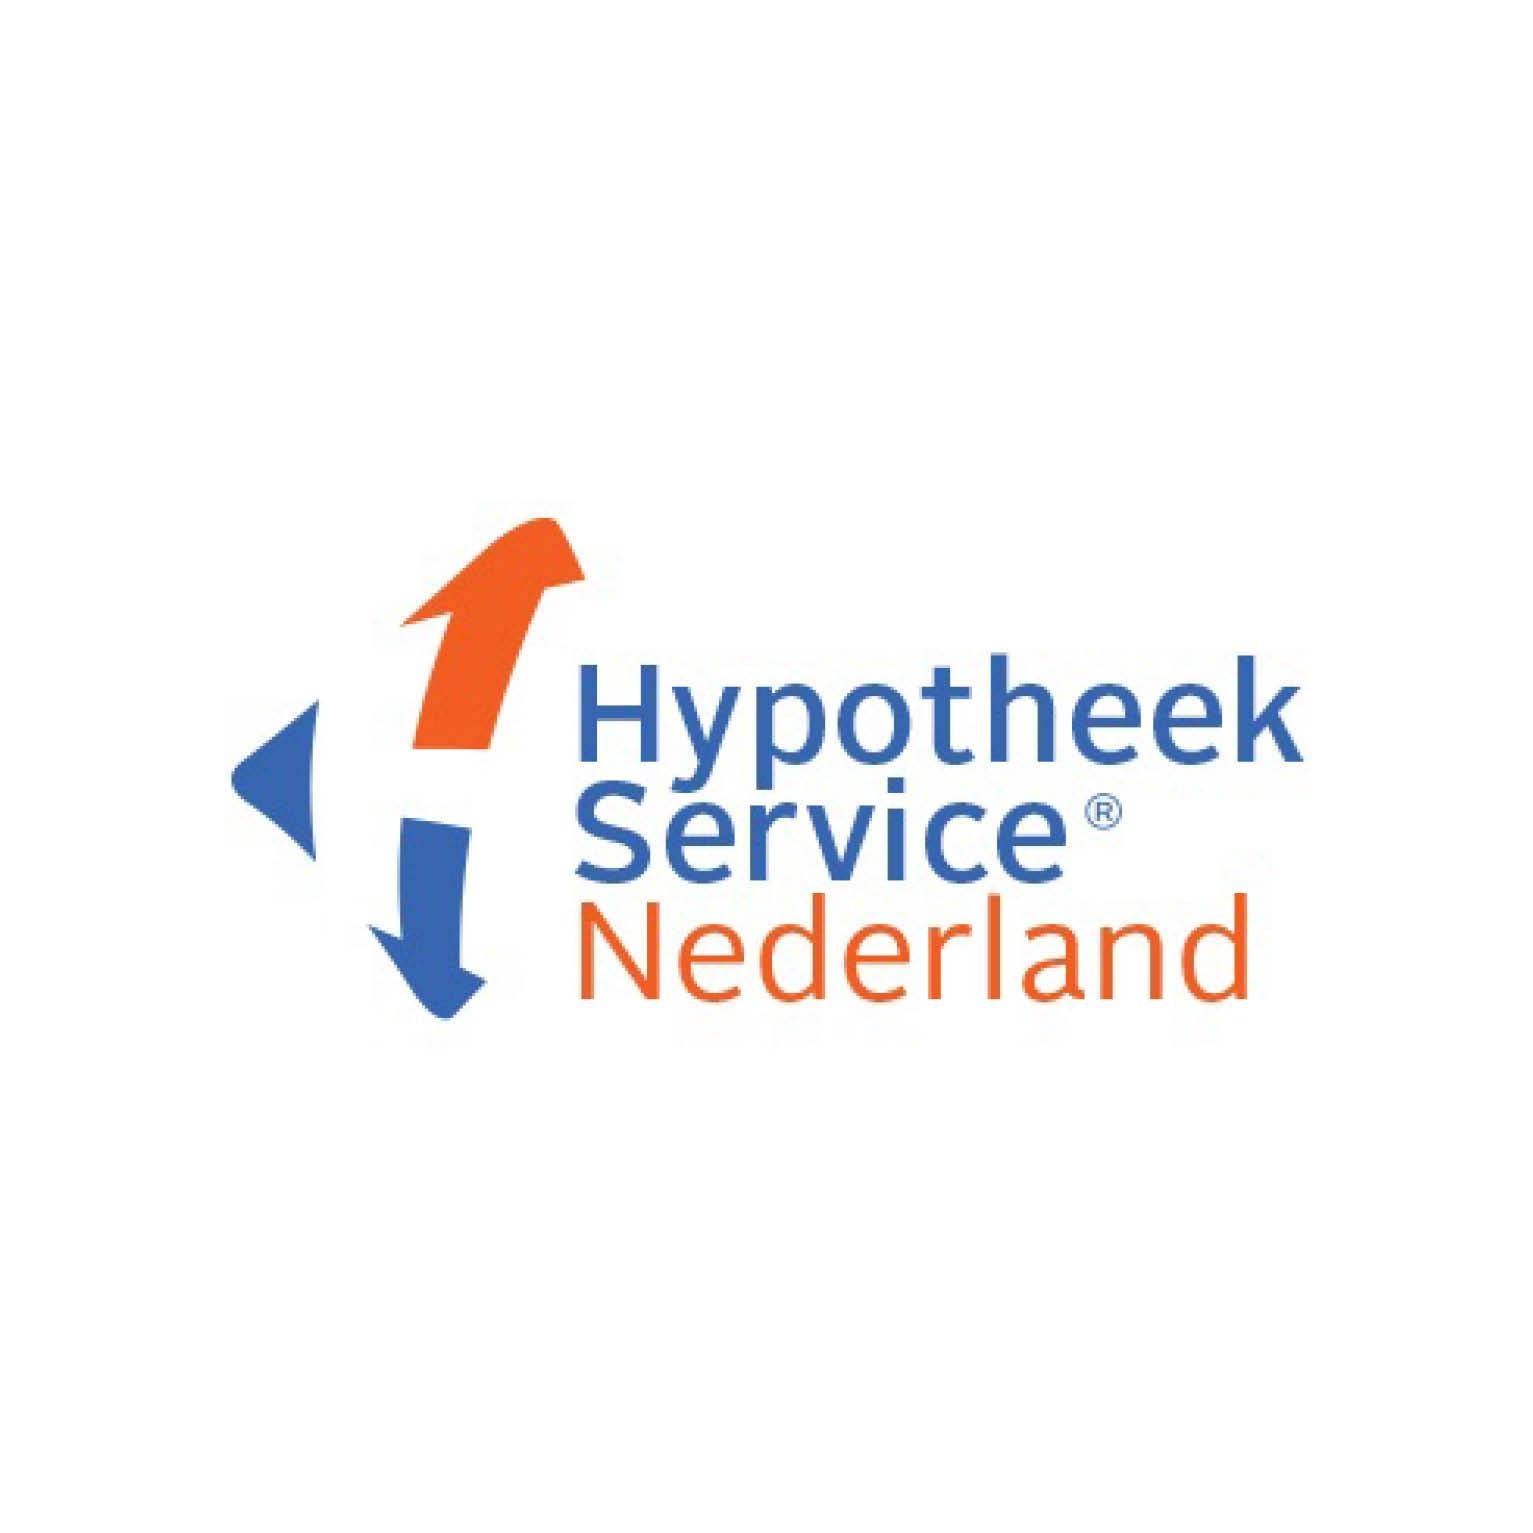 Hypotheek Service Nederland